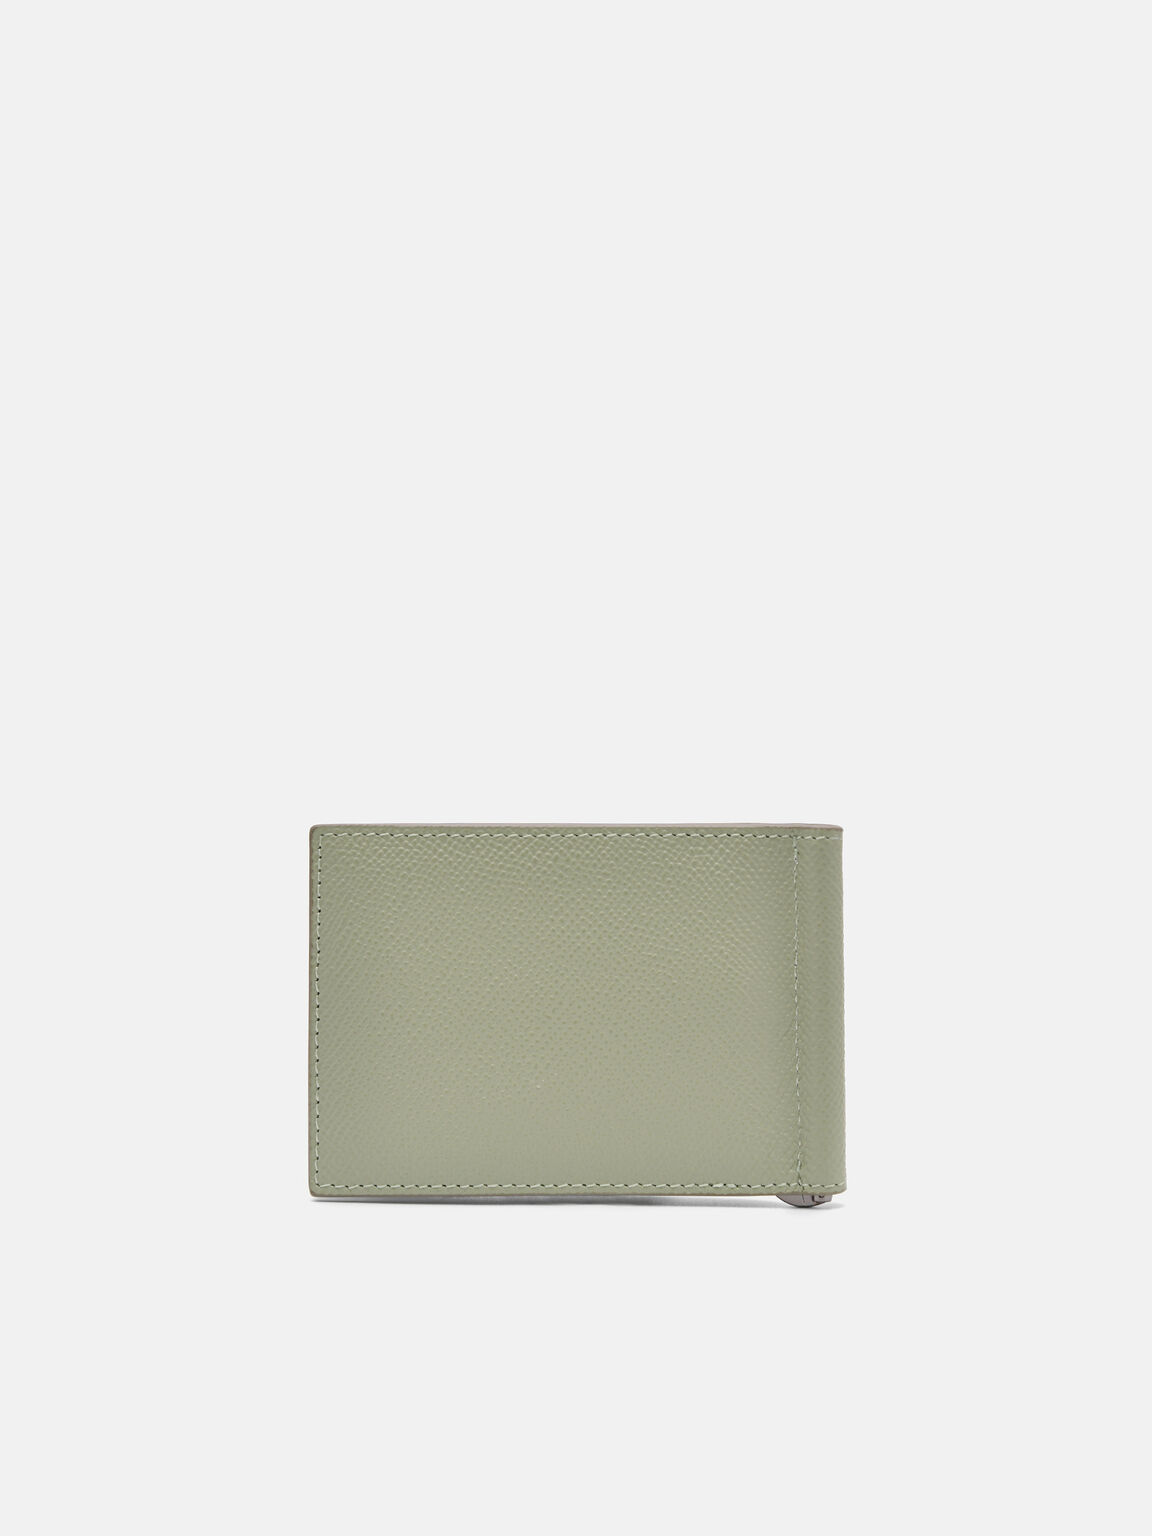 Oliver Leather Bi-Fold Card Holder with Money Clip, Olive, hi-res